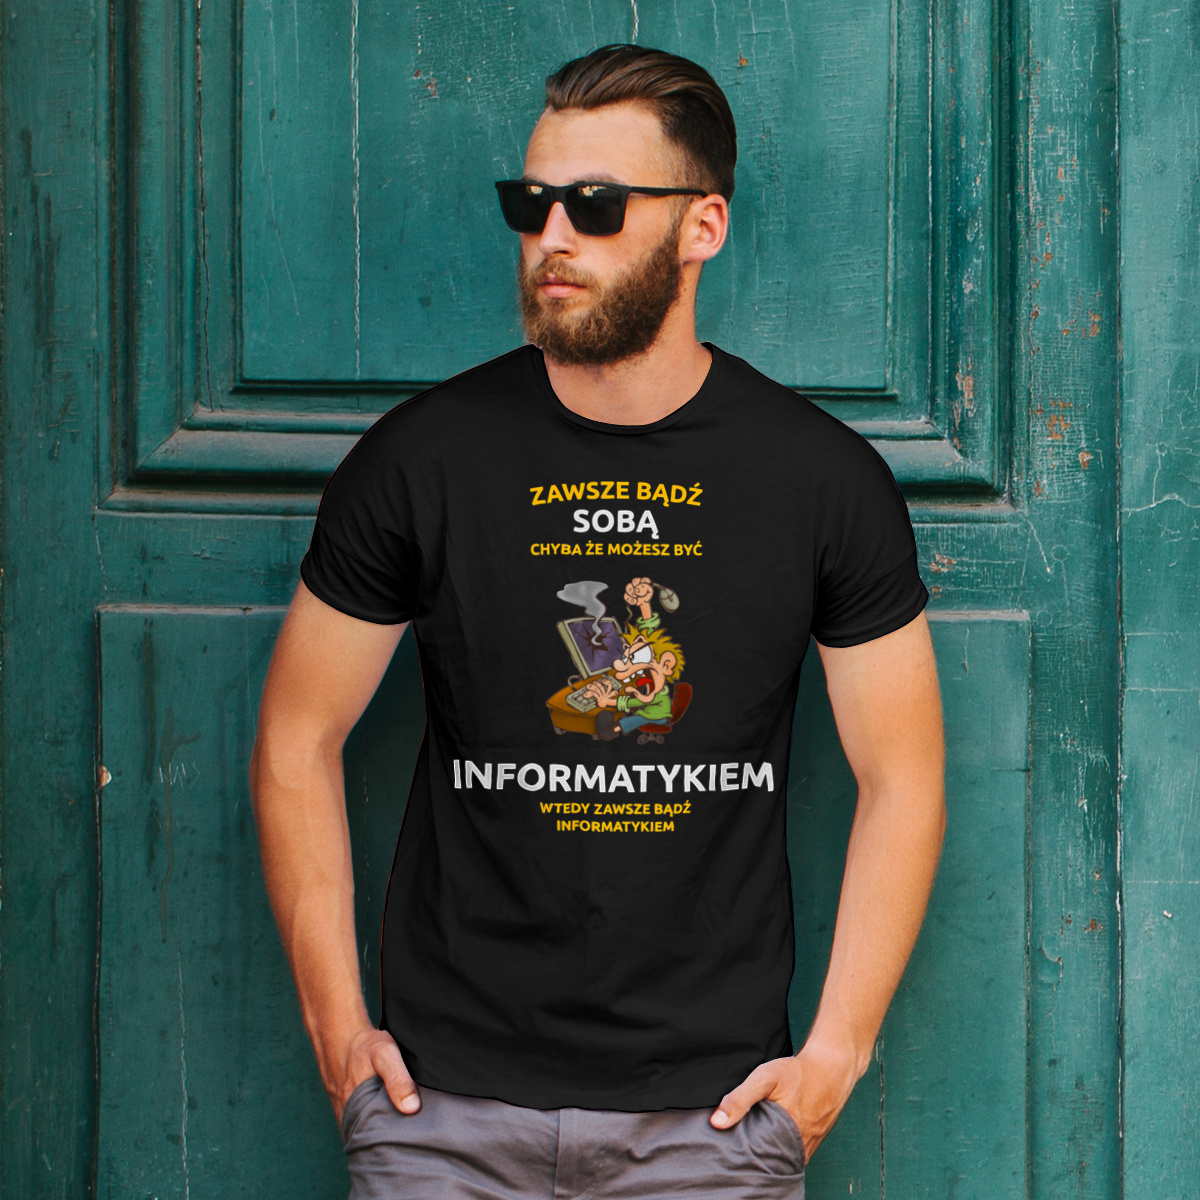 Zawsze Bądź Sobą, Chyba Że Możesz Być Informatykiem - Męska Koszulka Czarna